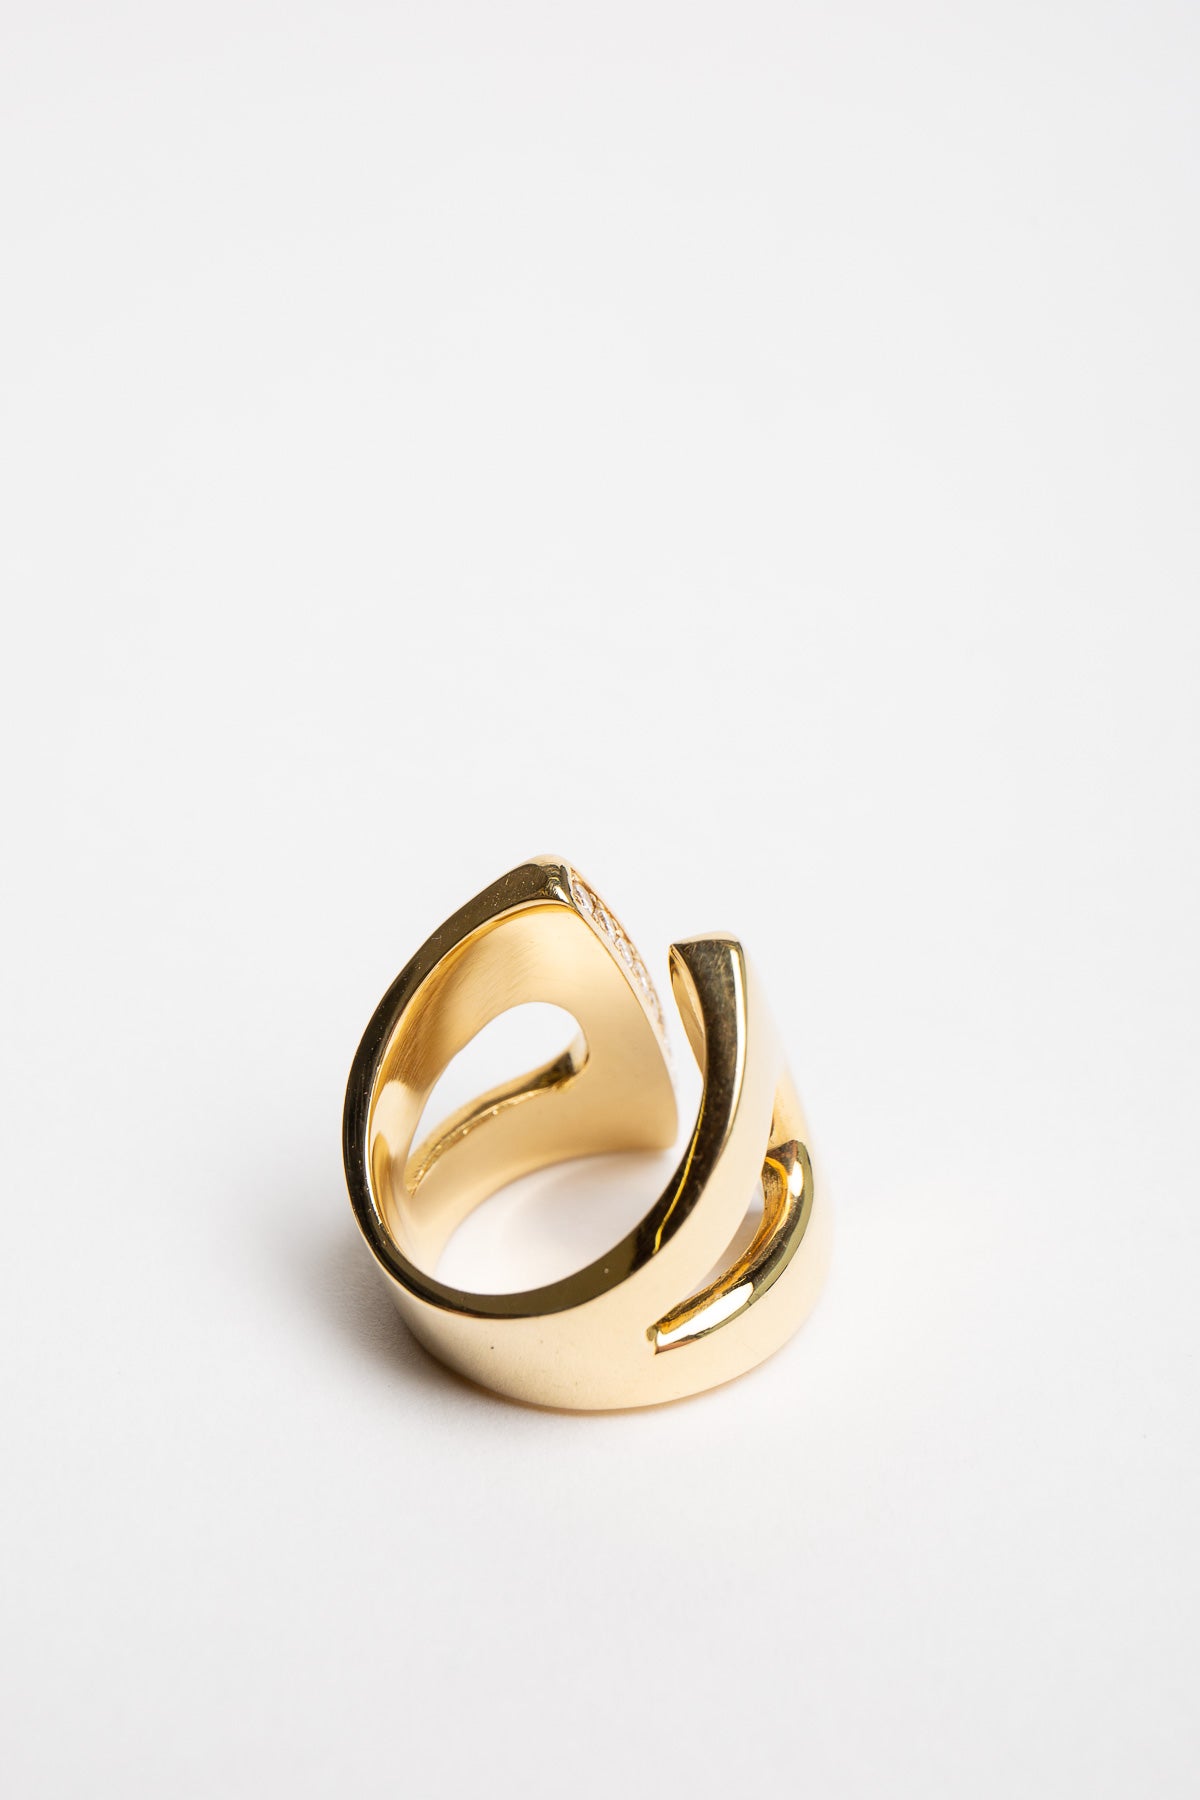 SARAH JANE WILDE | LARGE GOLD & WHITE DIAMOND RING